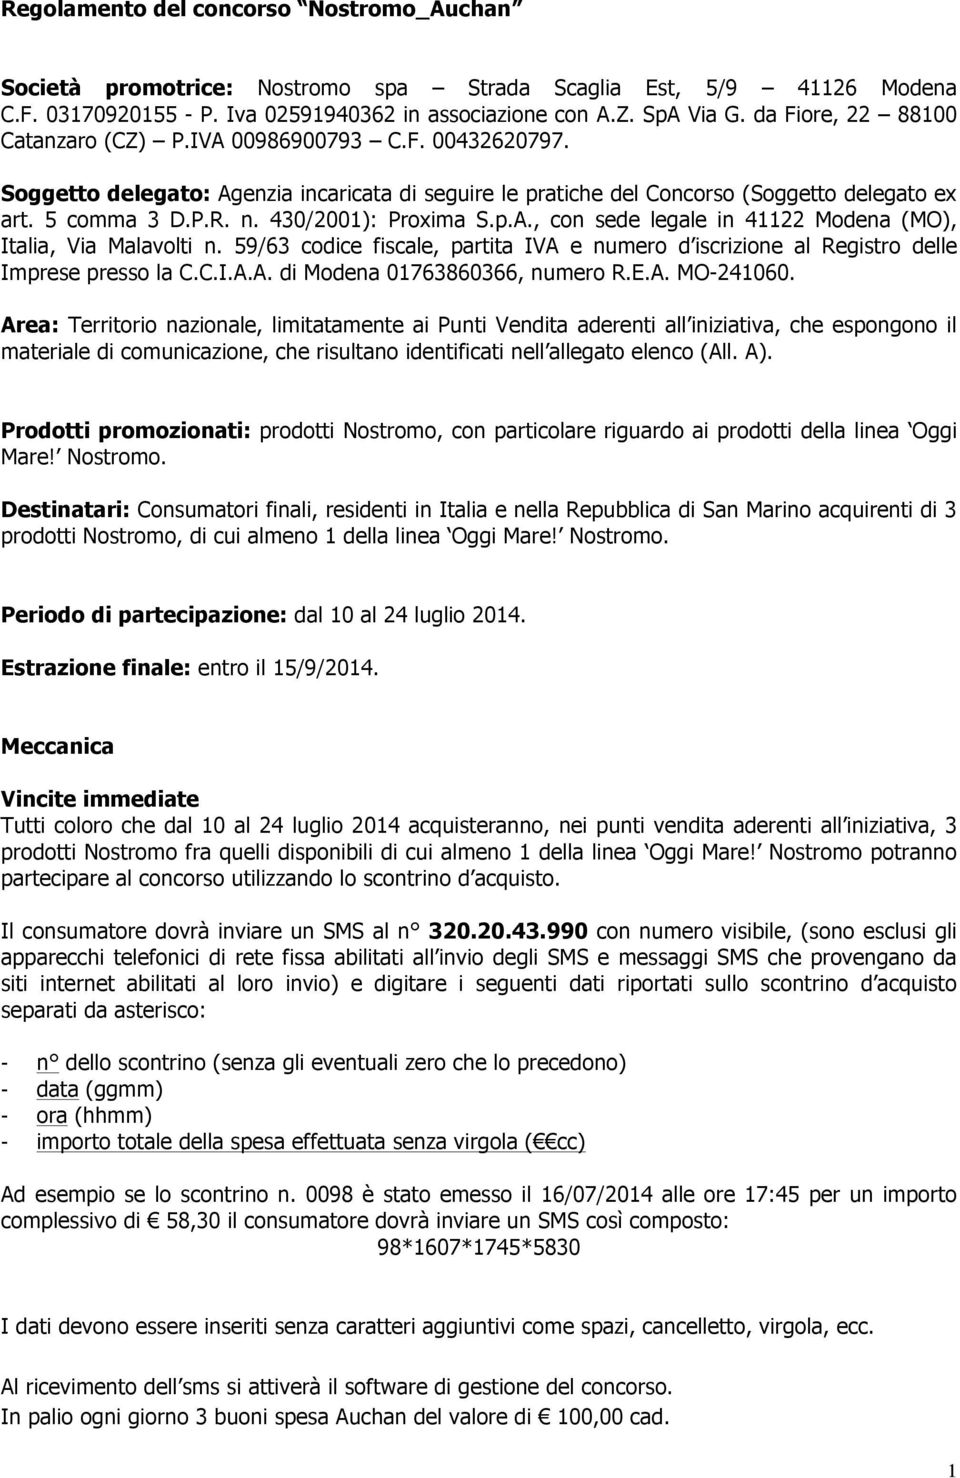 430/2001): Proxima S.p.A., con sede legale in 41122 Modena (MO), Italia, Via Malavolti n. 59/63 codice fiscale, partita IVA e numero d iscrizione al Registro delle Imprese presso la C.C.I.A.A. di Modena 01763860366, numero R.